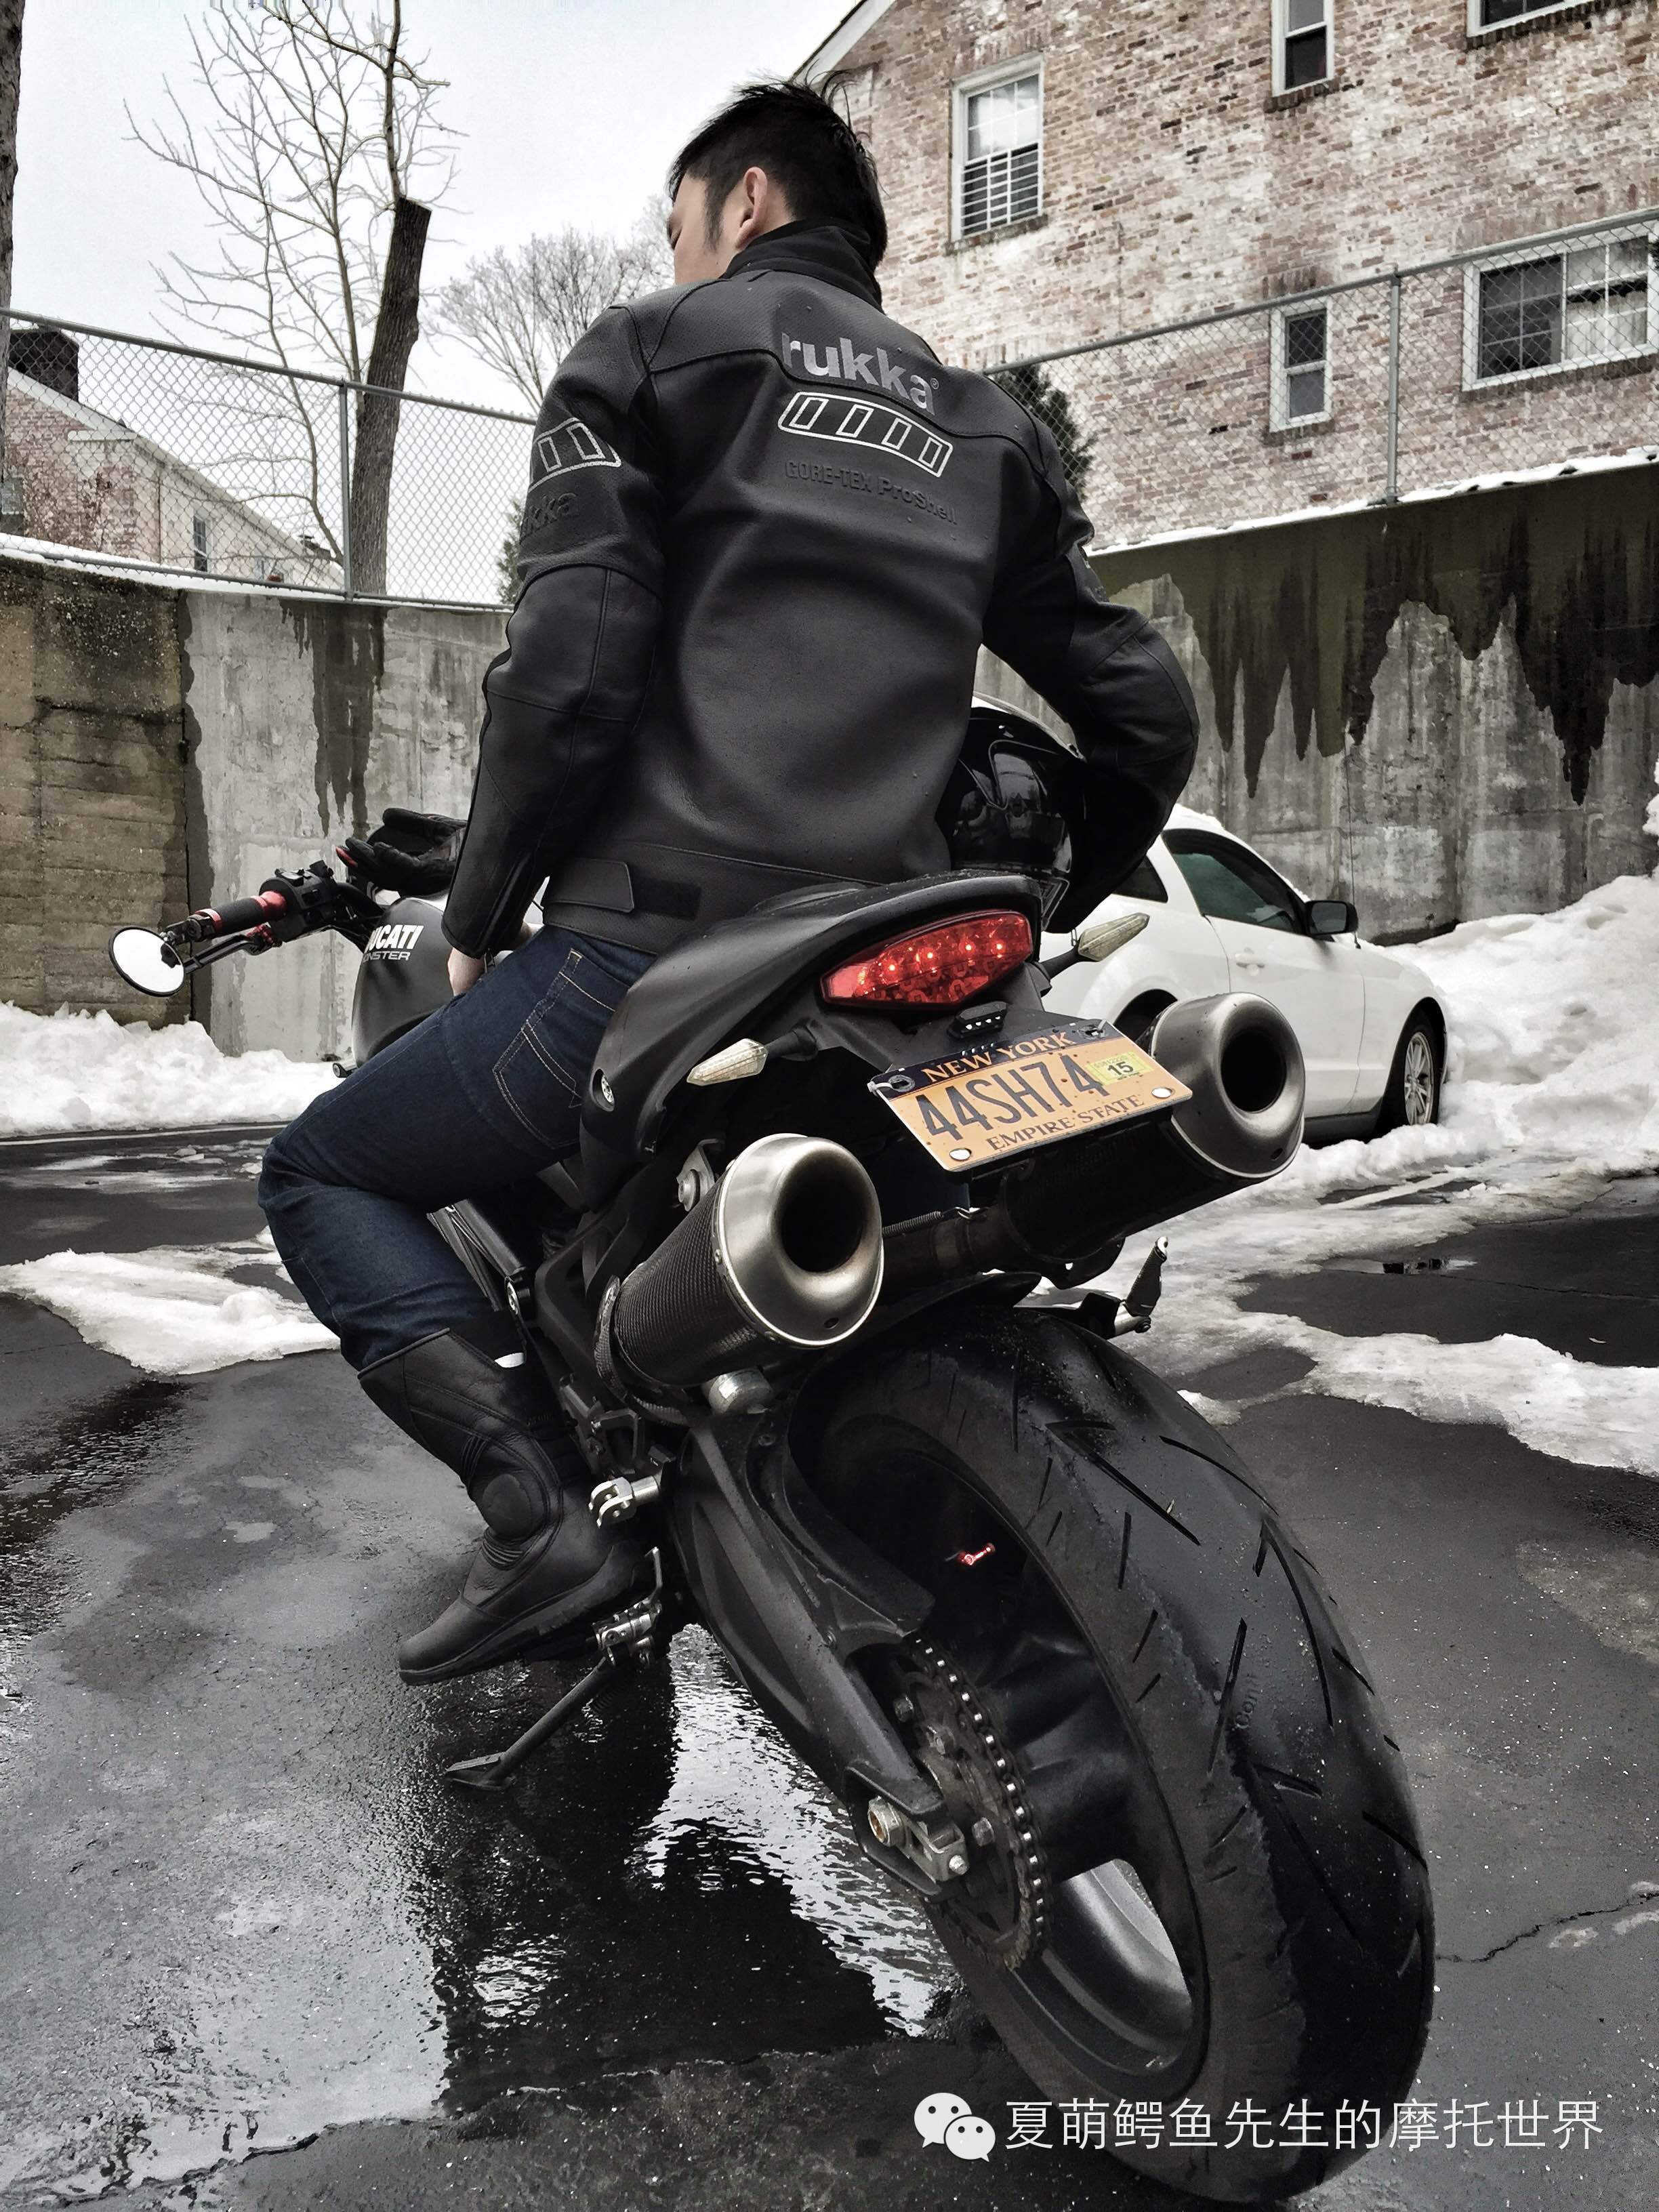 摩托车最昂贵的骑行衣：Rukka Merlin纯皮Gore-Tex Jacket实测